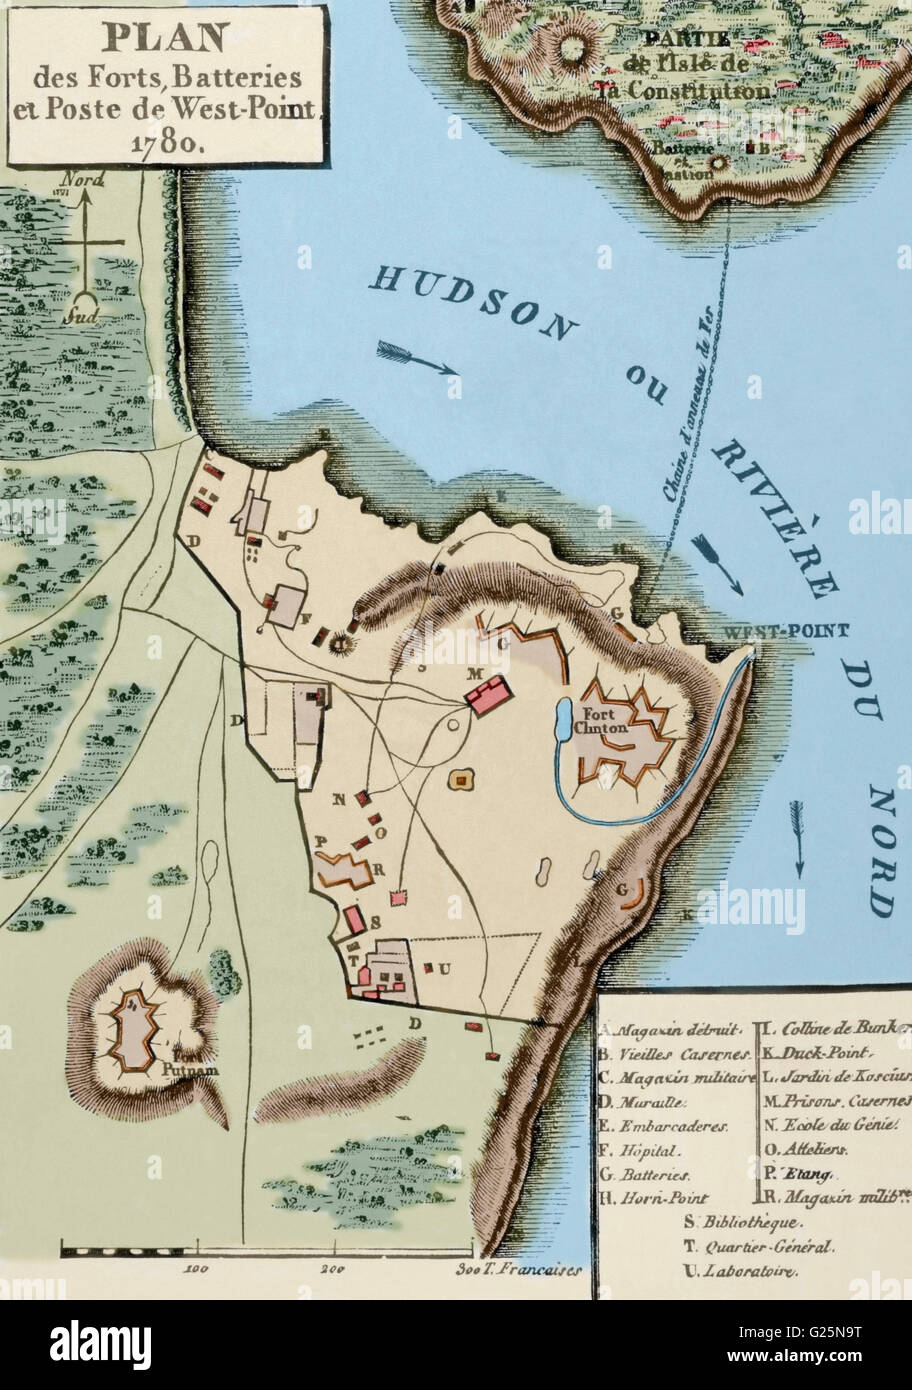 La guerra revolucionaria americana (1775-1783). Mapa de la red de defensa en West Point, incluyendo la Gran Cadena, Constitución Island, Fort Clinton, y Fort Putnam, 1780. Grabado. Coloreada. Foto de stock